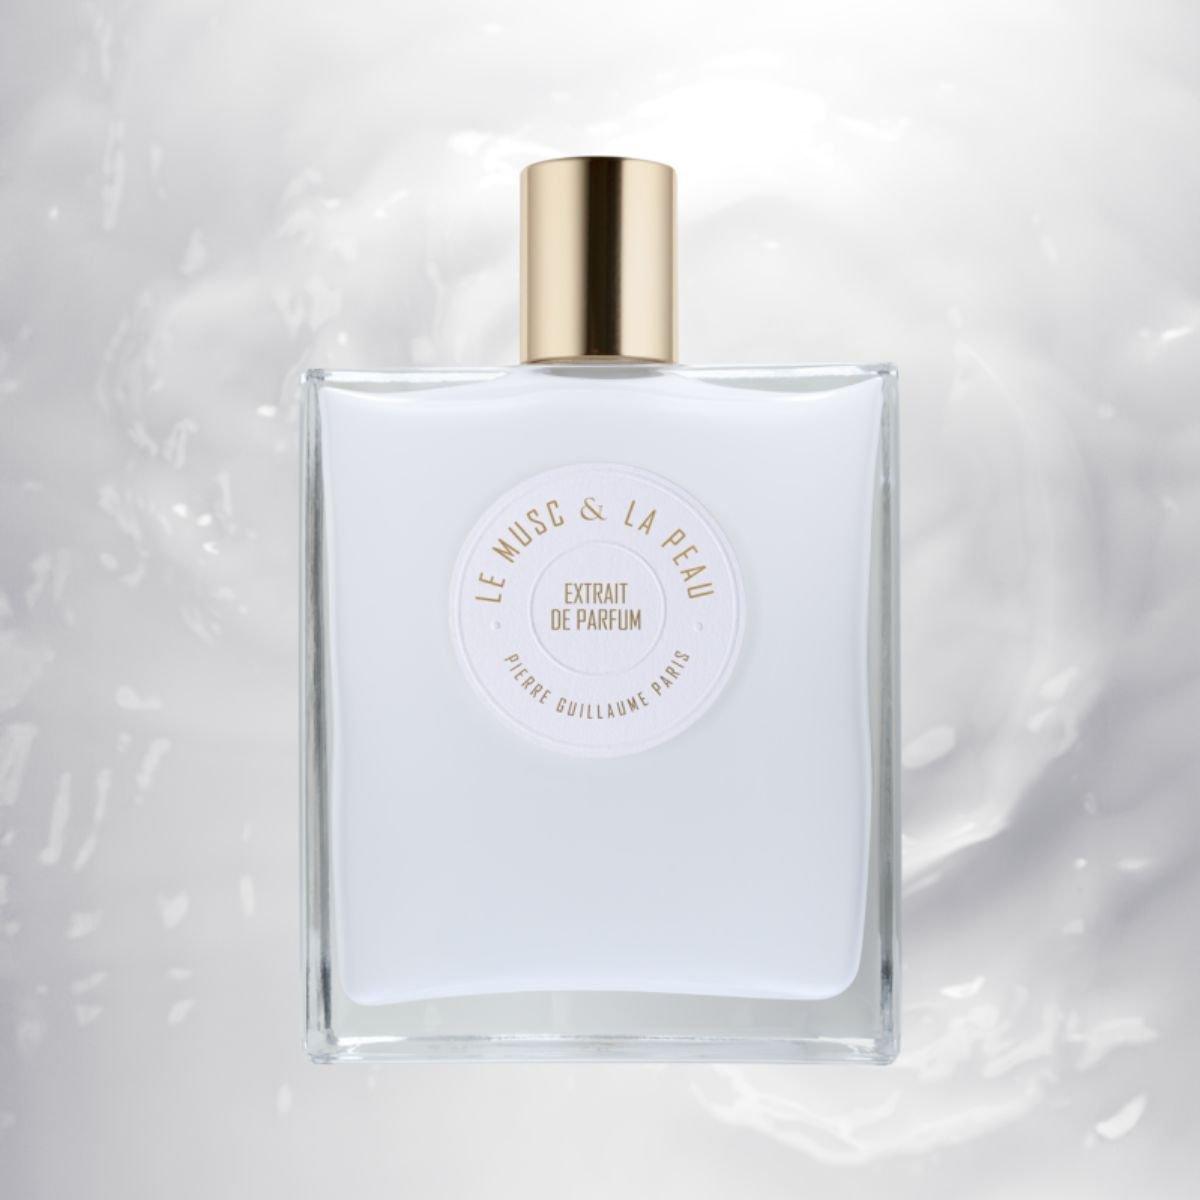 Pierre Guillaume Paris - Le Musc & La Peau Extrait de Parfum